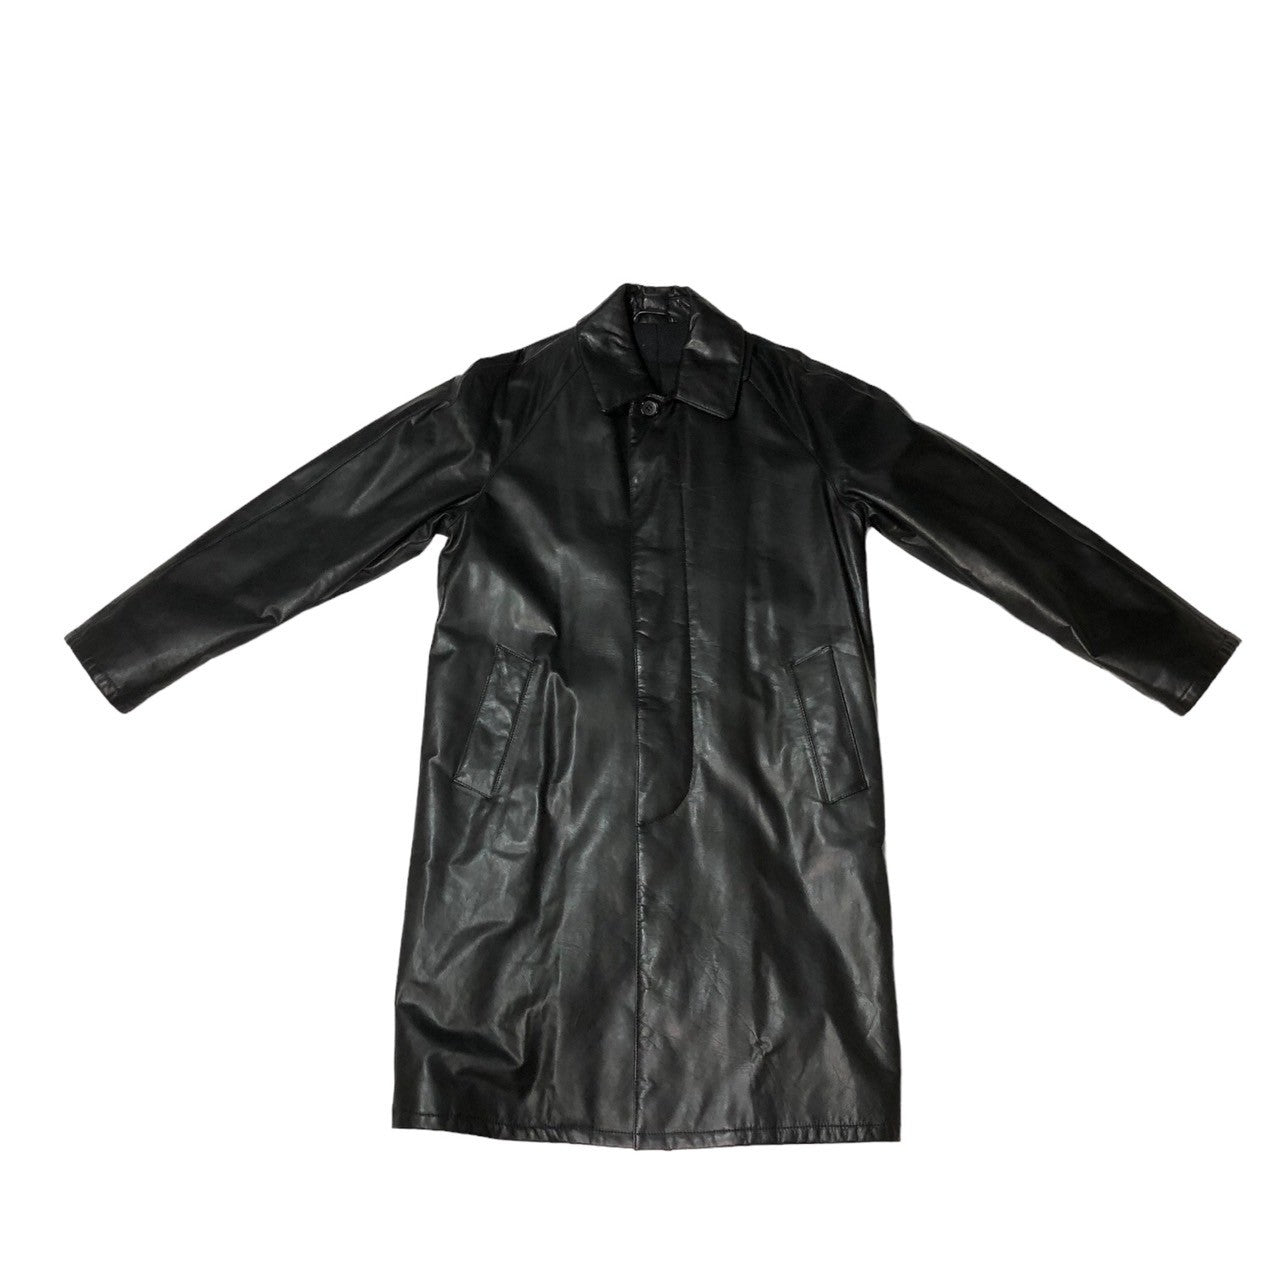 Salfra(サルフラ) 90's leather stainless steel collar coat レザー ステンカラー コート ロング 46(M程度) ブラック 90年代 イタリア製